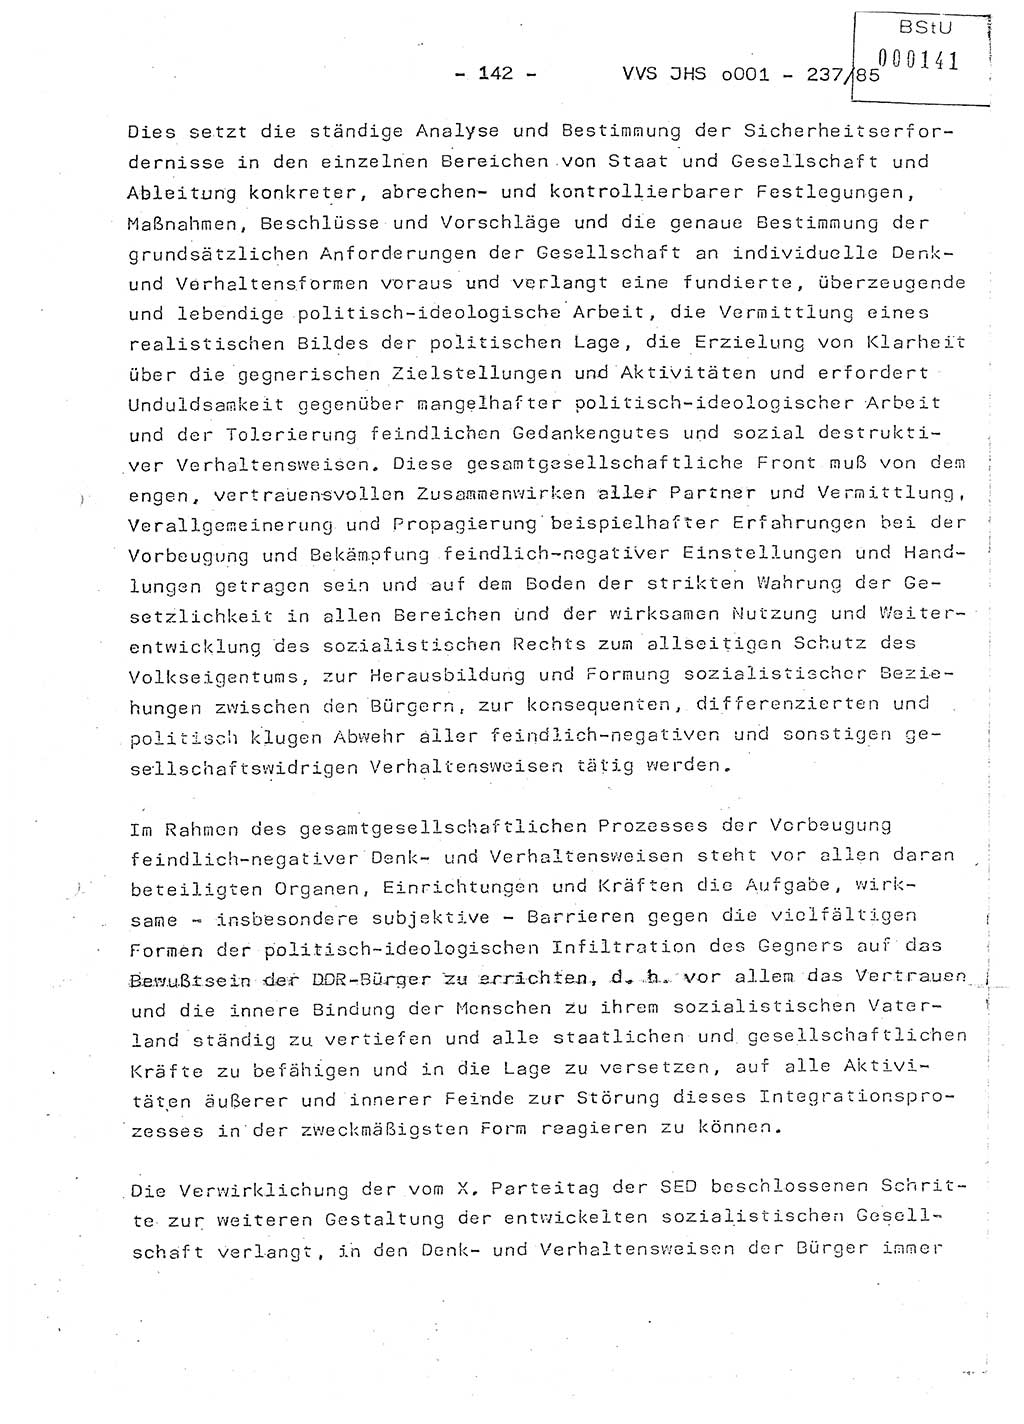 Dissertation Oberstleutnant Peter Jakulski (JHS), Oberstleutnat Christian Rudolph (HA Ⅸ), Major Horst Böttger (ZMD), Major Wolfgang Grüneberg (JHS), Major Albert Meutsch (JHS), Ministerium für Staatssicherheit (MfS) [Deutsche Demokratische Republik (DDR)], Juristische Hochschule (JHS), Vertrauliche Verschlußsache (VVS) o001-237/85, Potsdam 1985, Seite 142 (Diss. MfS DDR JHS VVS o001-237/85 1985, S. 142)